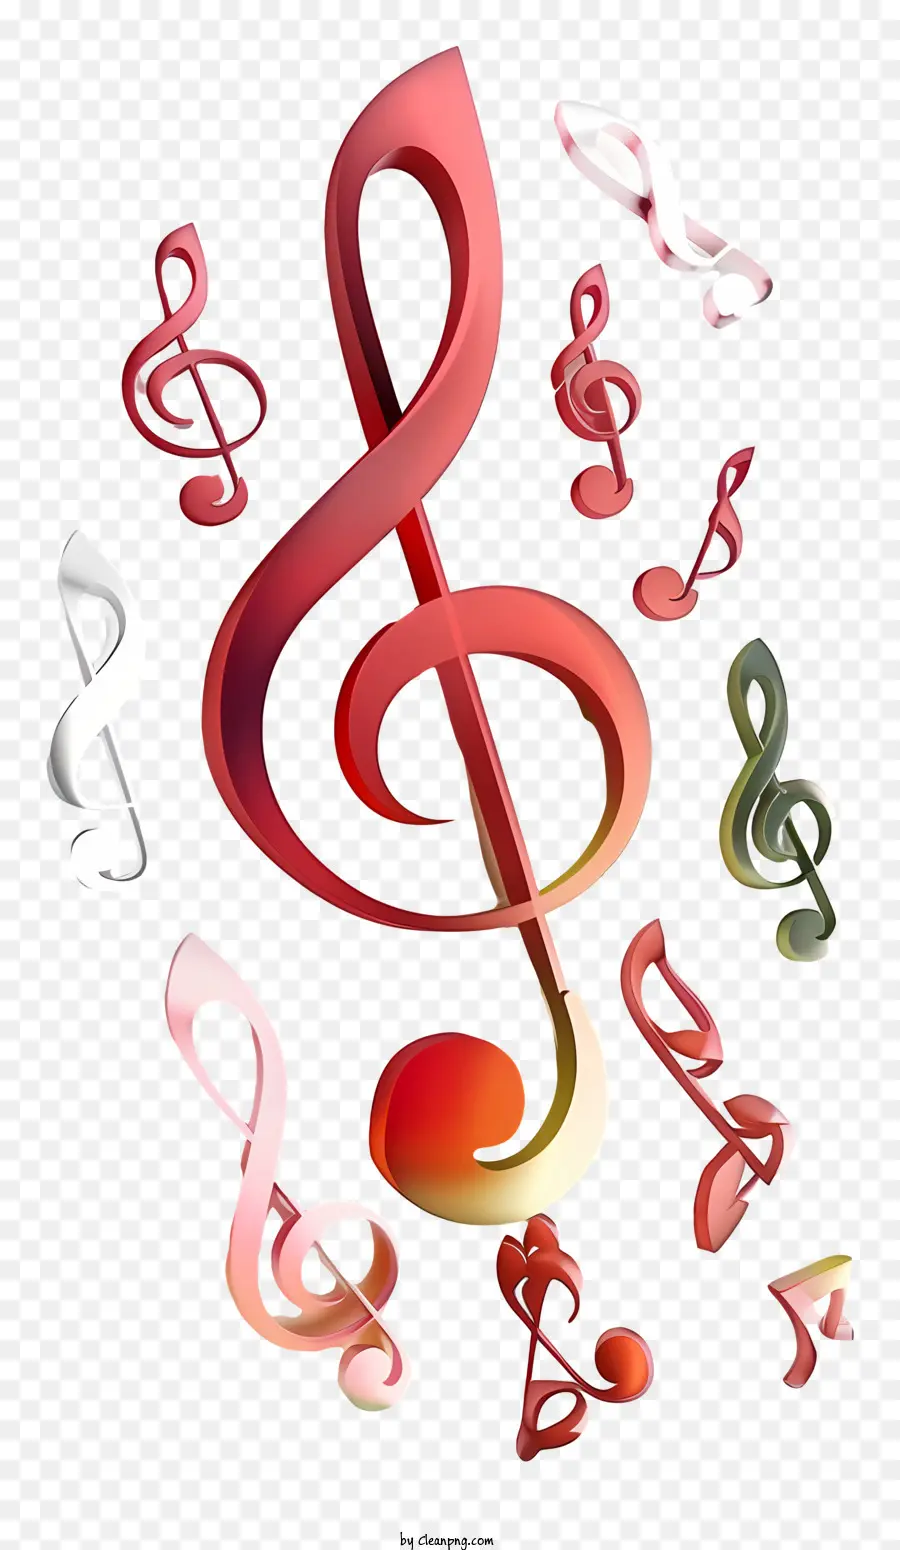 le note di musica - Note musicali colorate attorno al simbolo della clef acuti